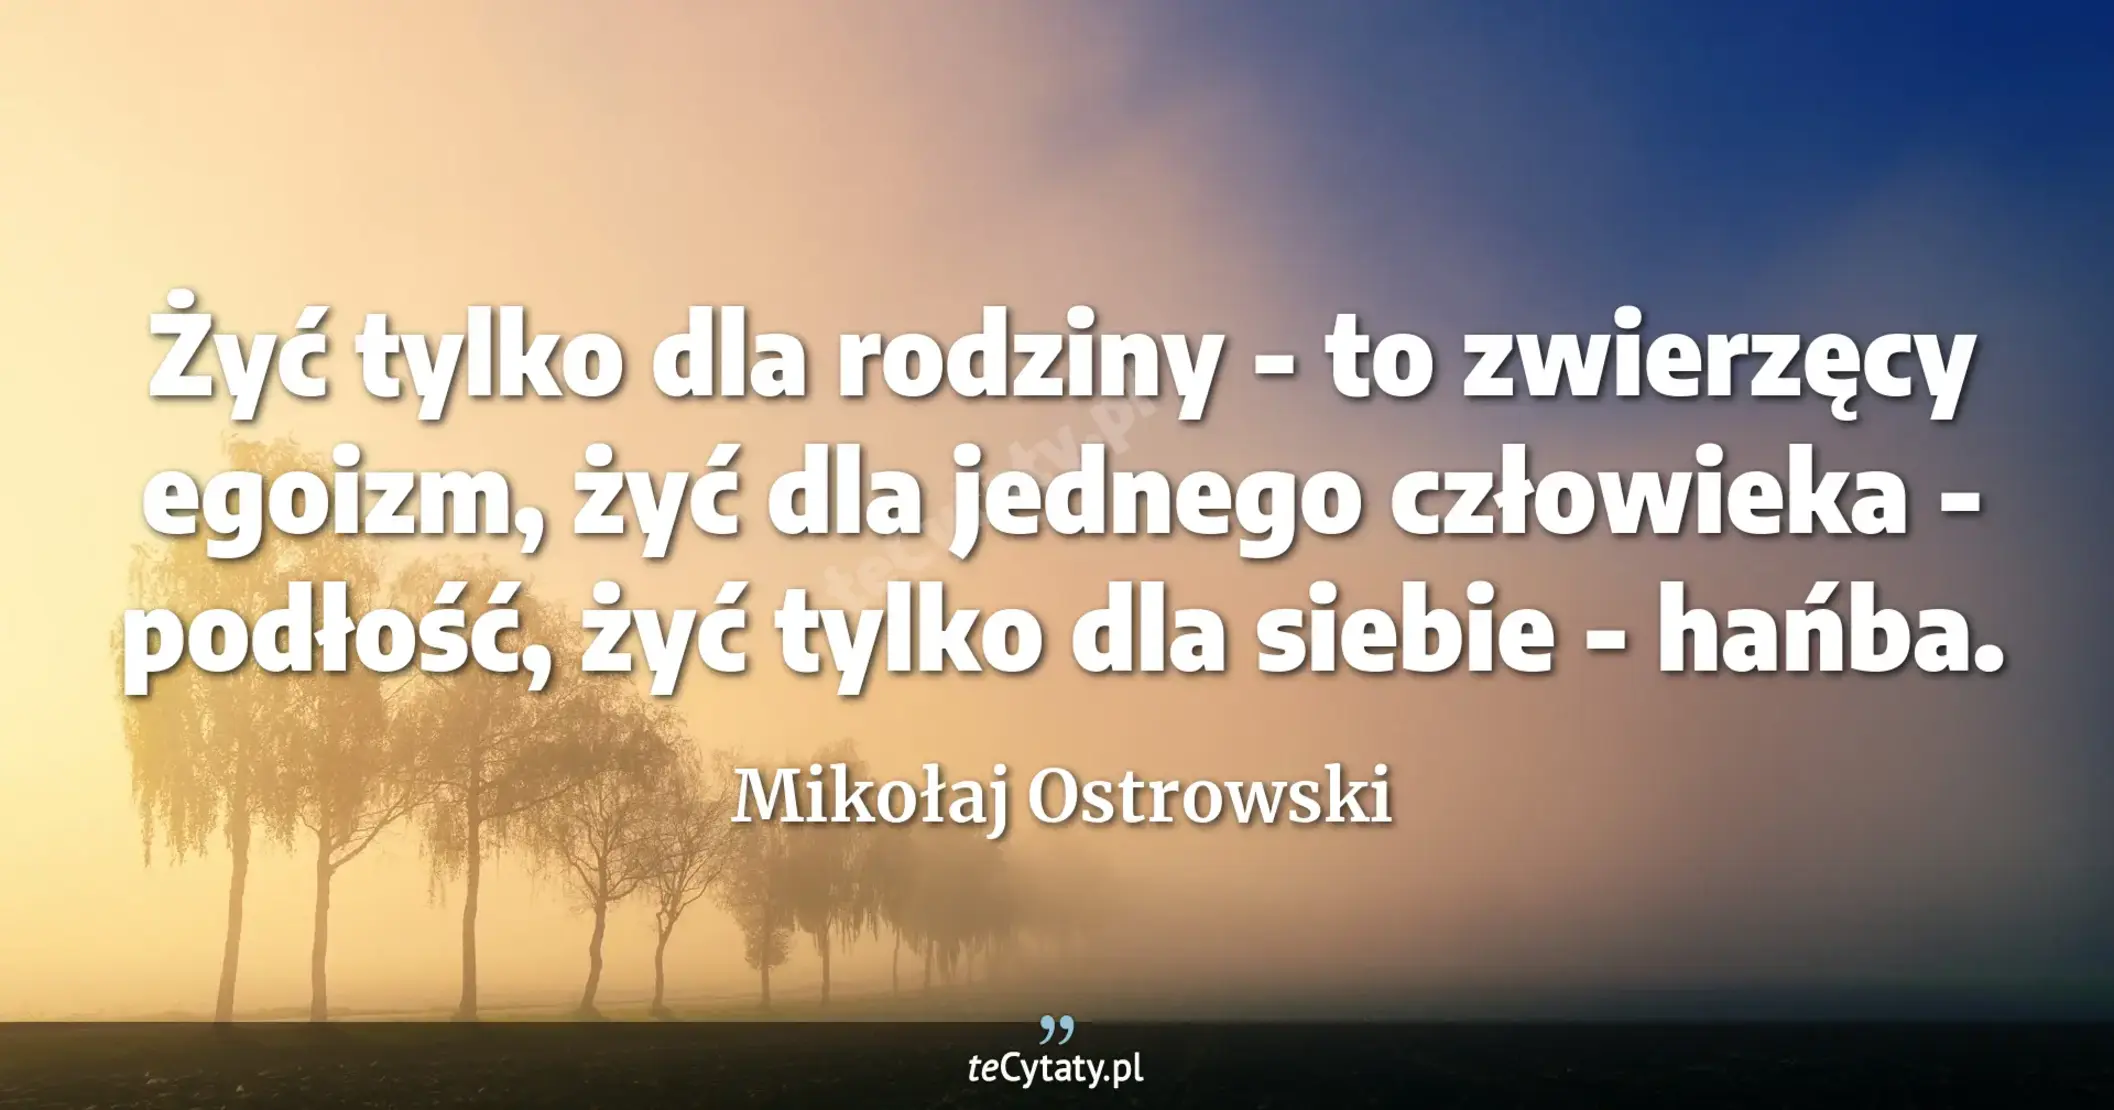 Żyć tylko dla rodziny - to zwierzęcy egoizm, żyć dla jednego człowieka - podłość, żyć tylko dla siebie - hańba. - Mikołaj Ostrowski